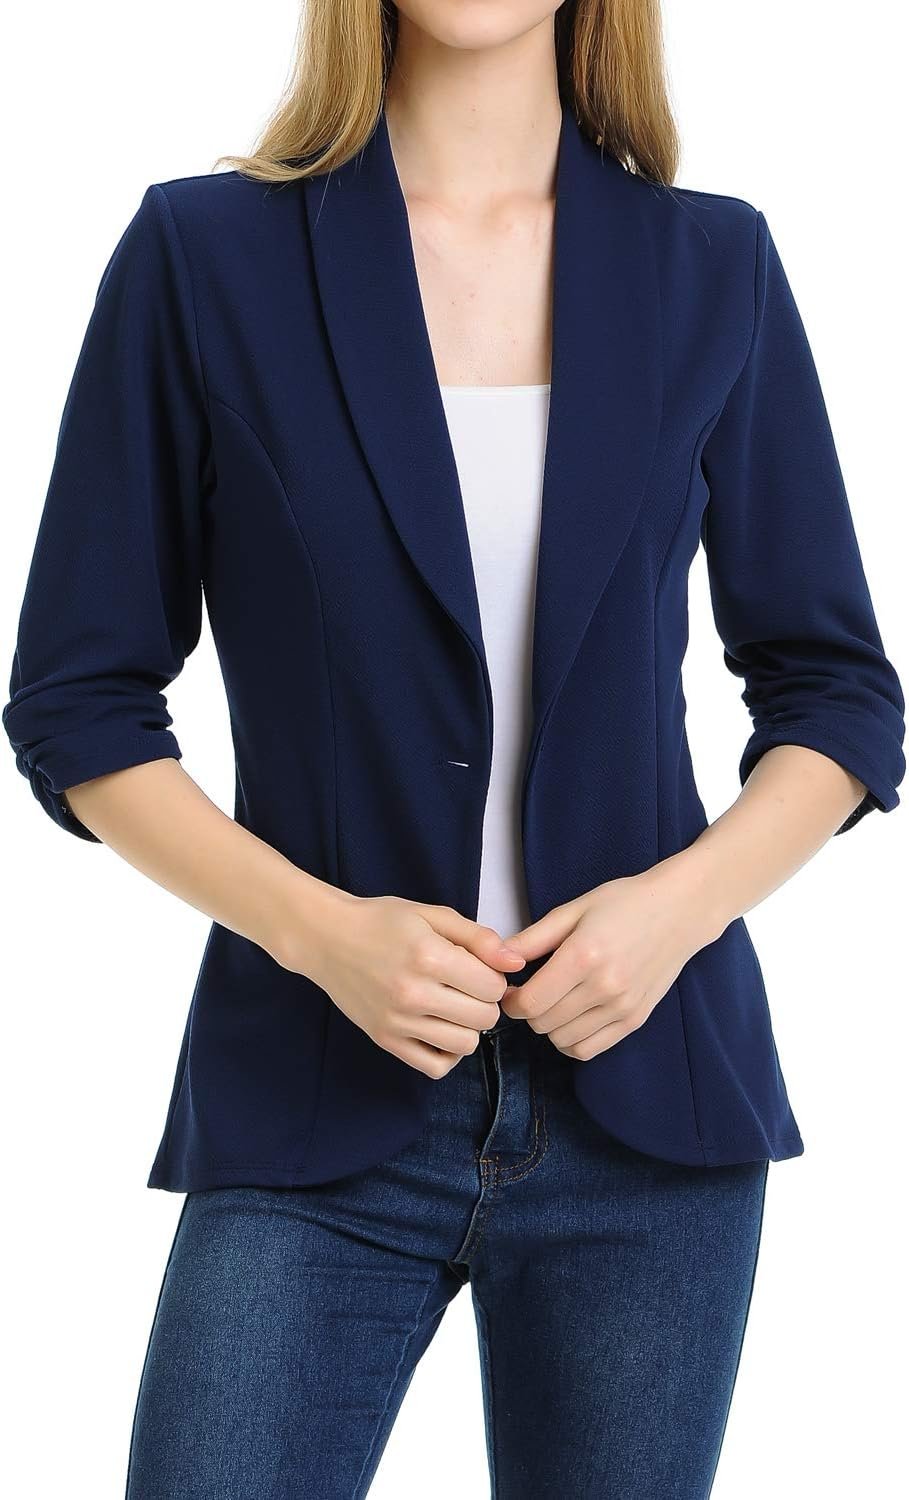 MINEFREE Womens 3/4 Ruched Sleeve Lightweight Work Office Blazer Jacket (S-3XL)